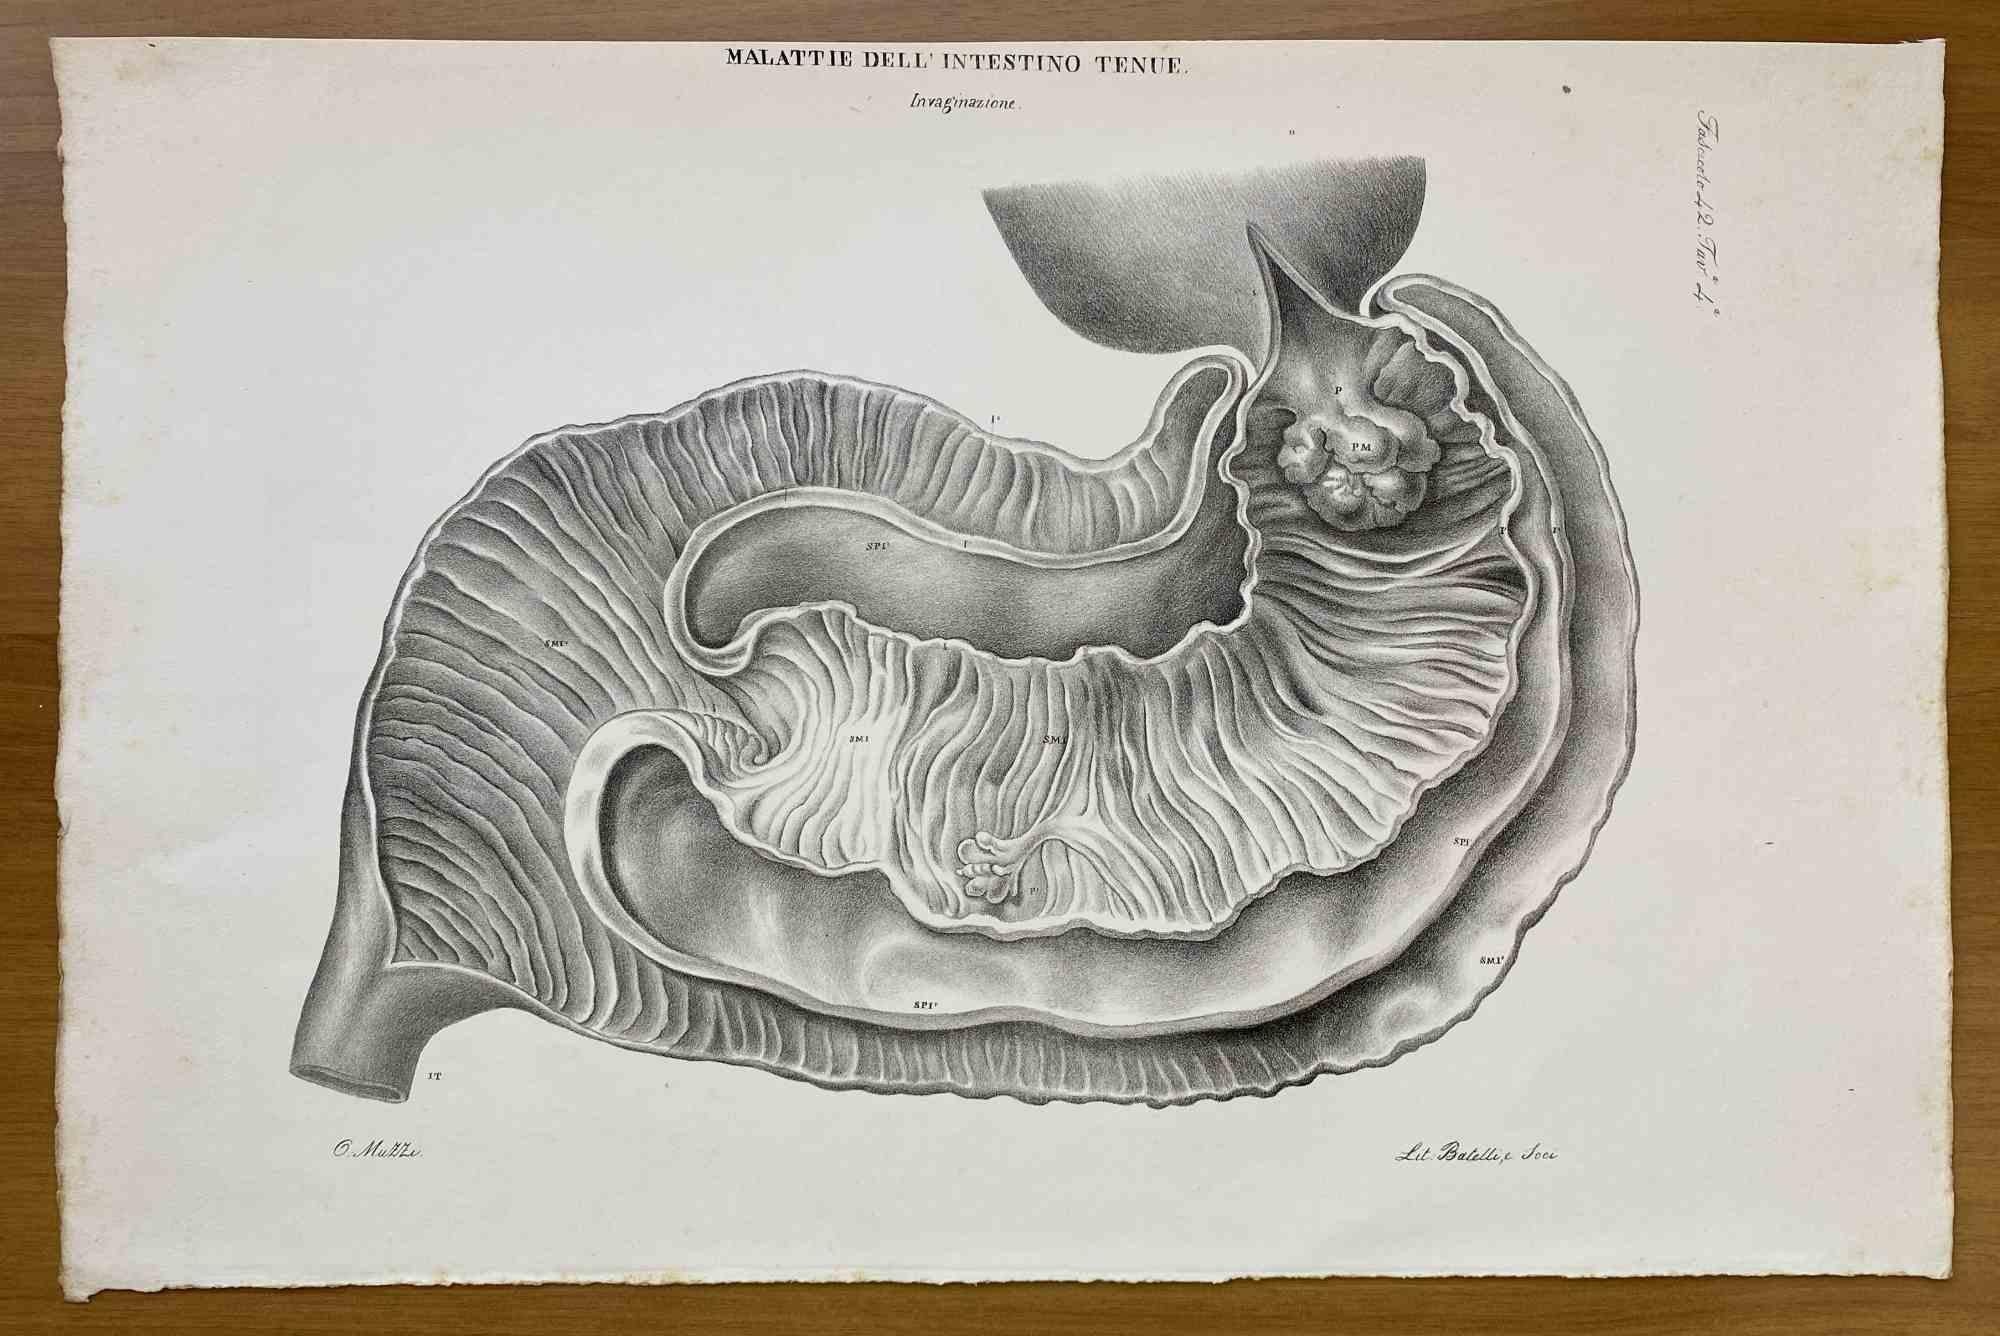 Small Intestine Disease ist eine handkolorierte Lithographie von Ottavio Muzzi für die Ausgabe von Antoine Chazal, Human Anatomy, Printers Batelli and Ridolfi, 1843.

Das Werk gehört zum Atlante generale della anatomia patologica del corpo umano von